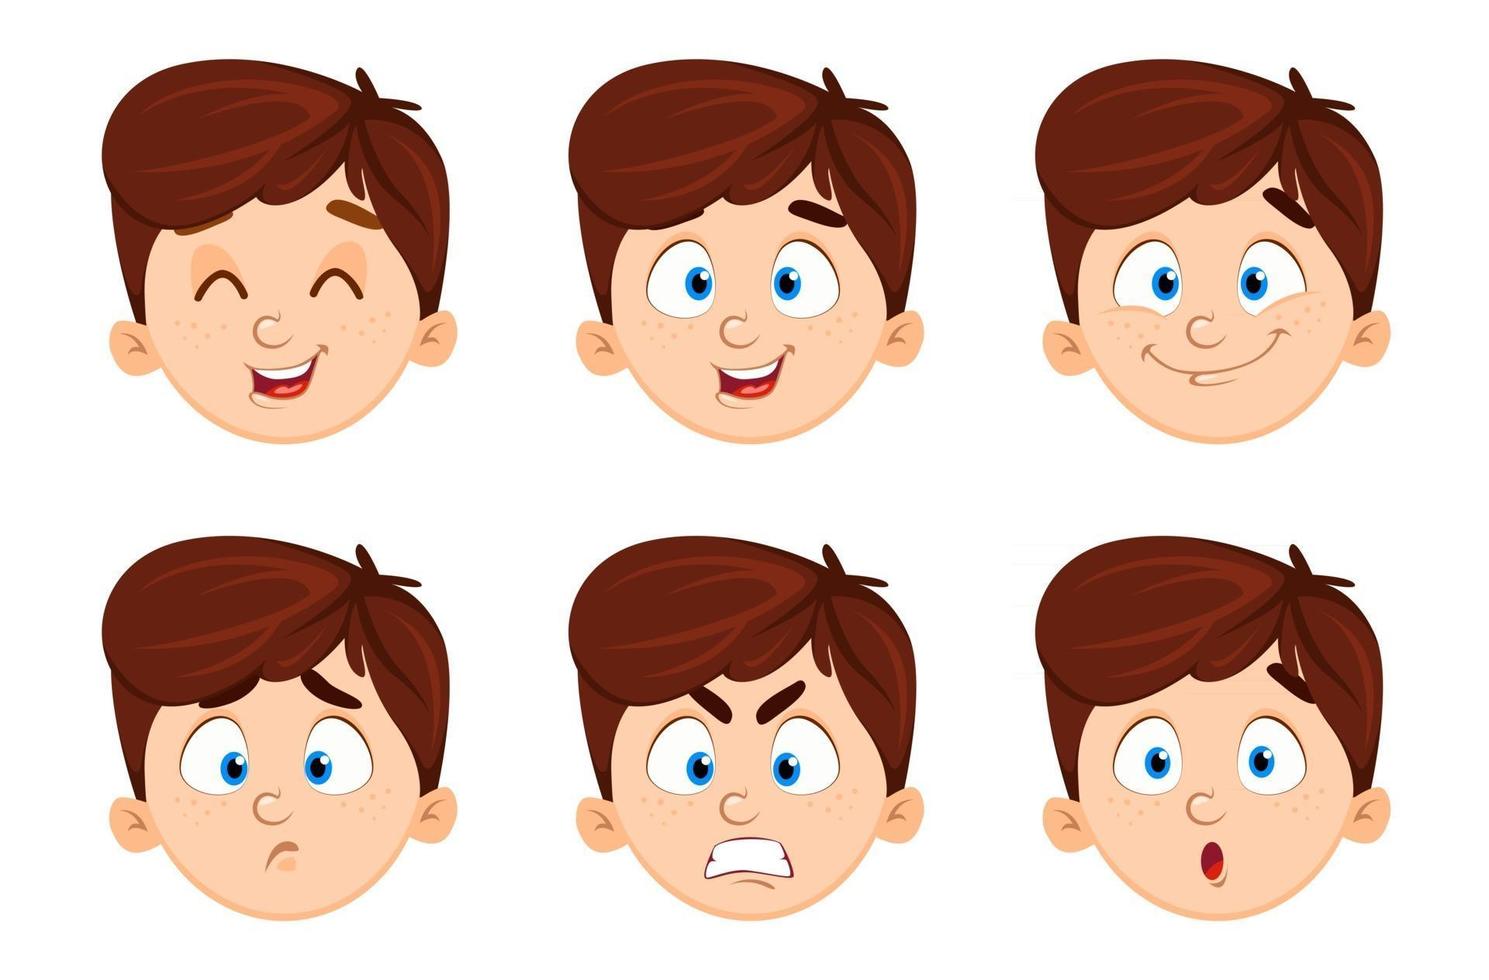 gezichtsuitdrukkingen van schattige jongen set van zes emoties vector